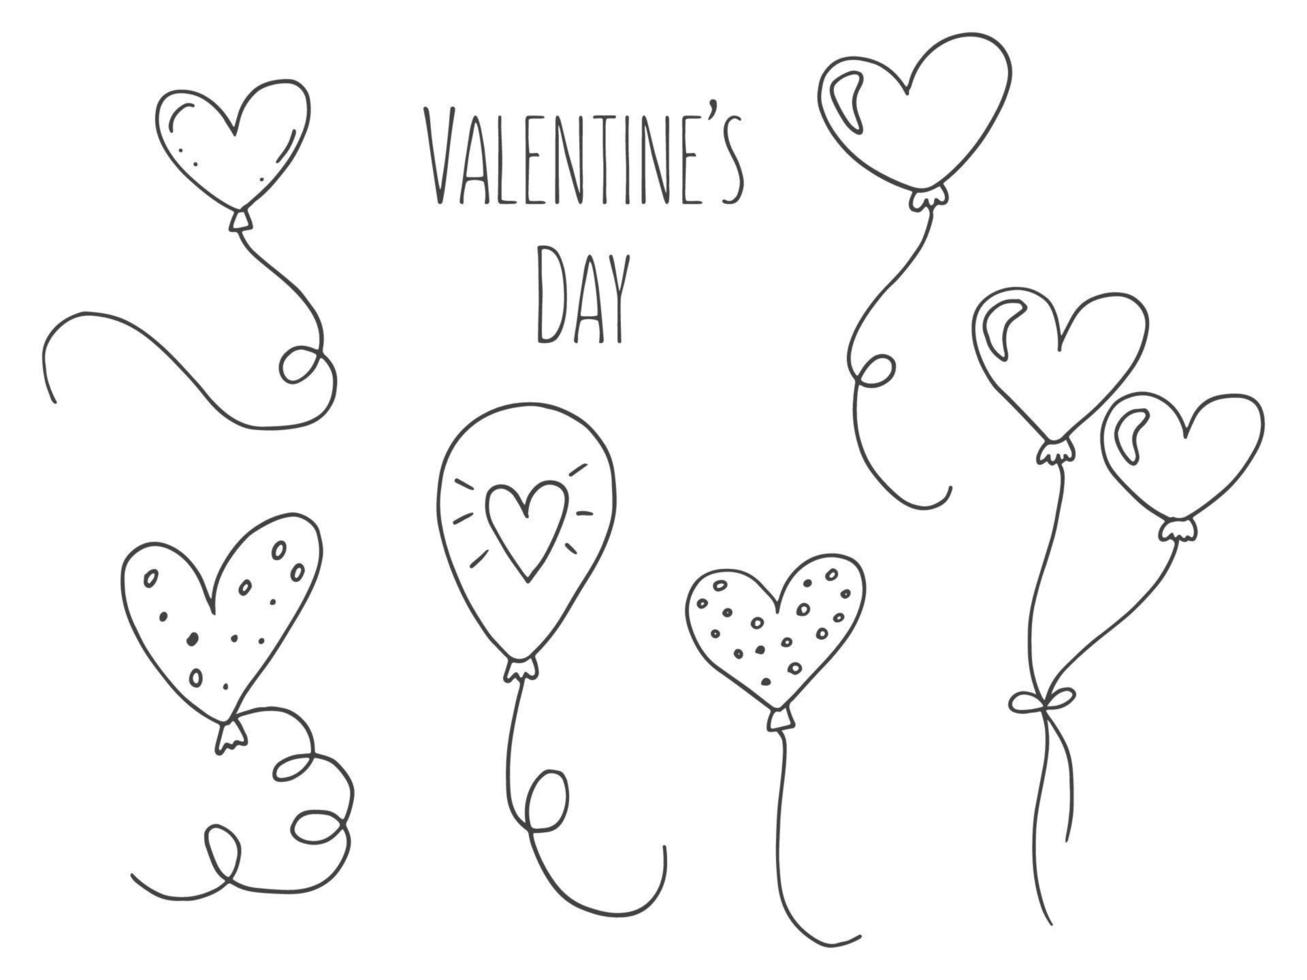 conjunto de elementos de doodle bonitos desenhados à mão sobre o amor. adesivos de mensagem para aplicativos. ícones para dia dos namorados, eventos românticos e casamento. balões em forma de coração estão voando. vetor